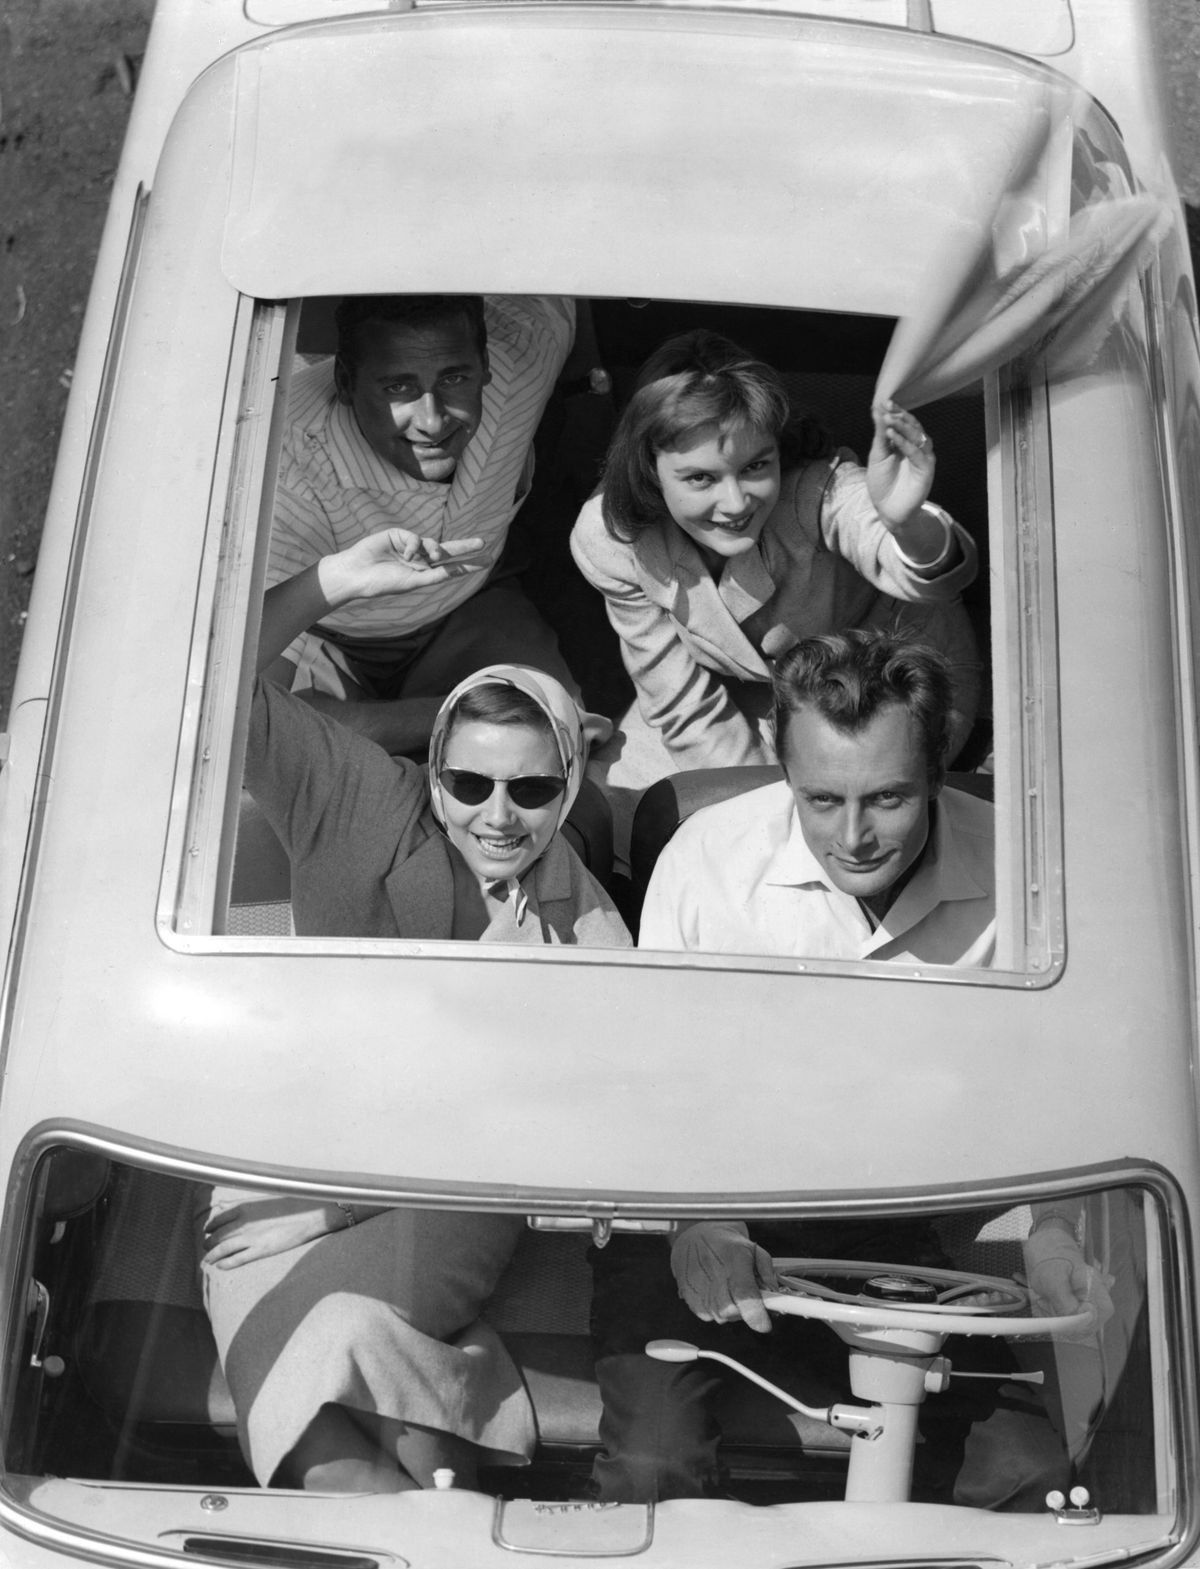 noored, kes viipasid 1950. aastatel avatud kabriolettist